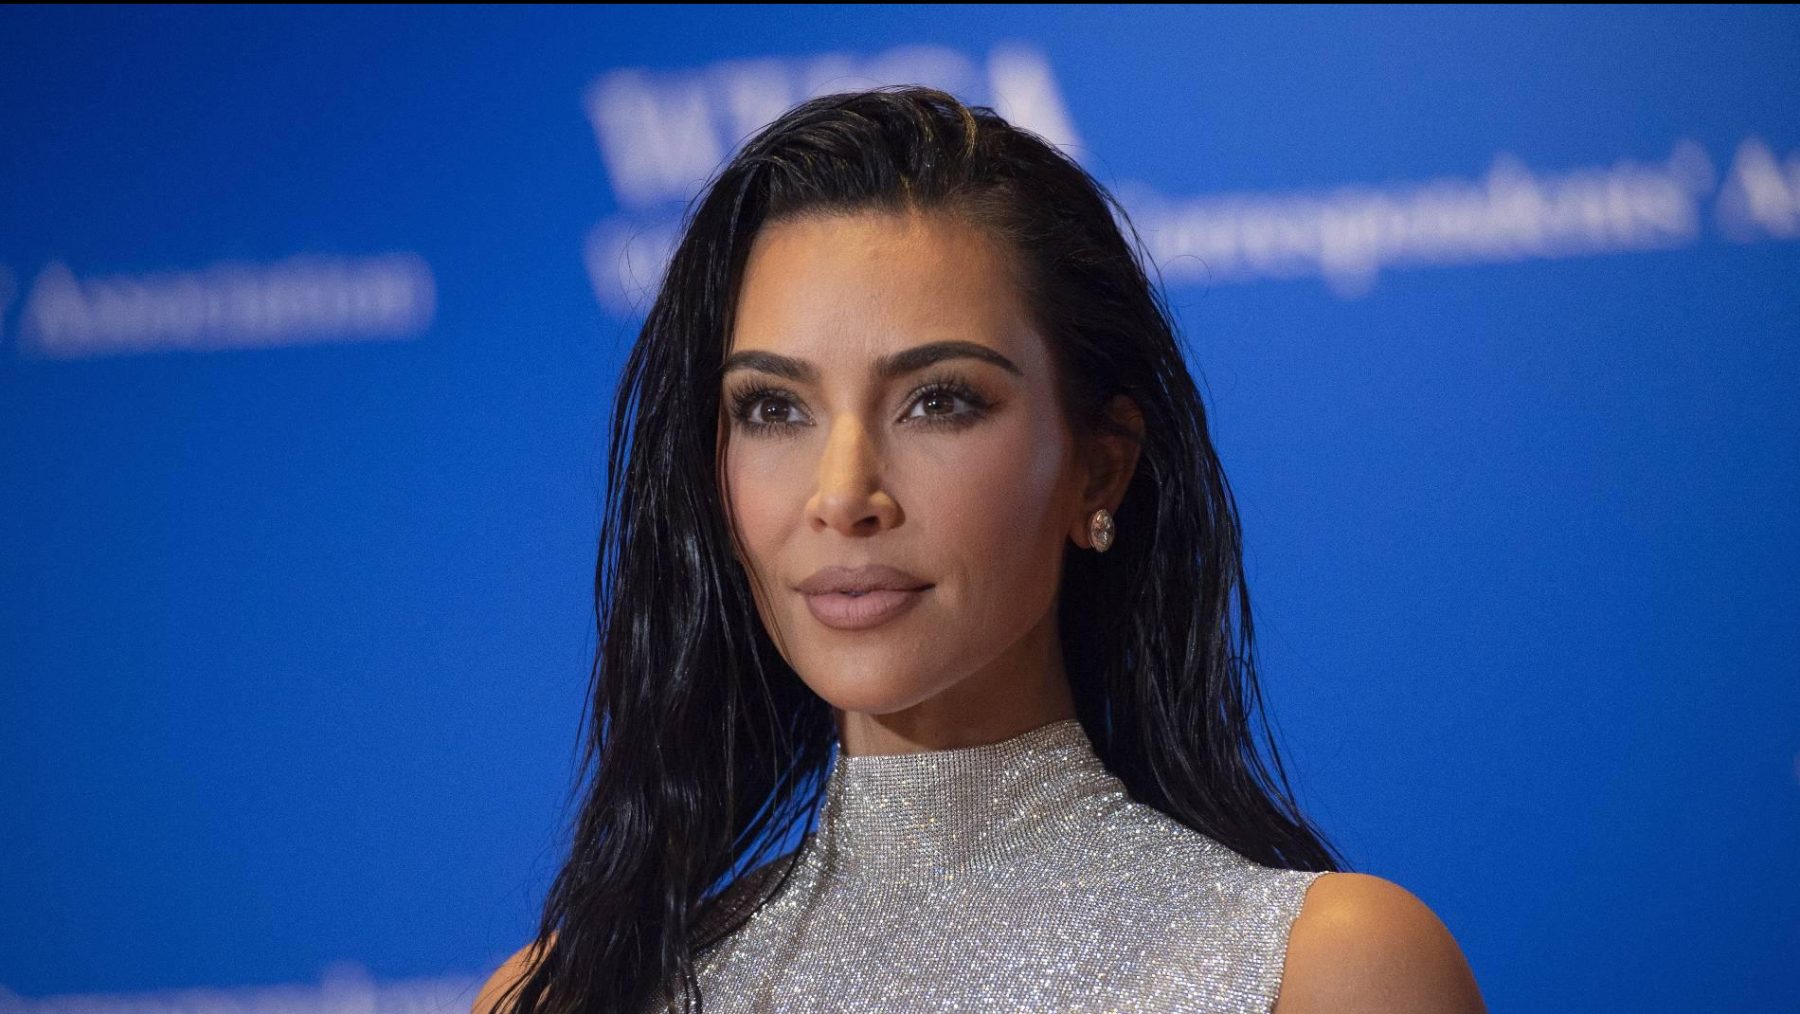 Kim Kardashian Sports Illustrated